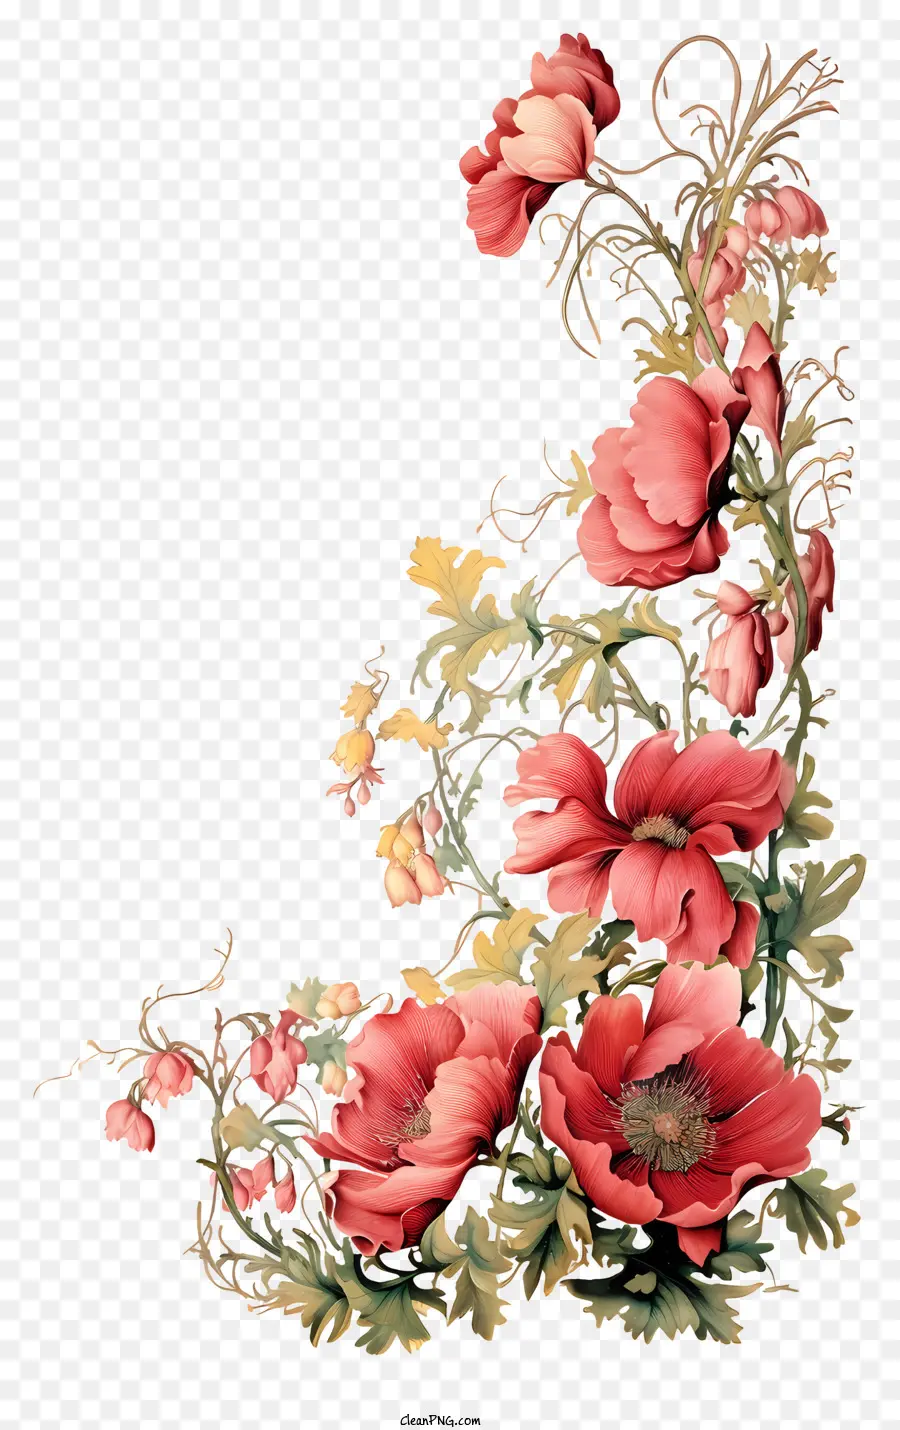 la disposizione dei fiori - Elegante vaso con colorato disposizione floreale simmetrica